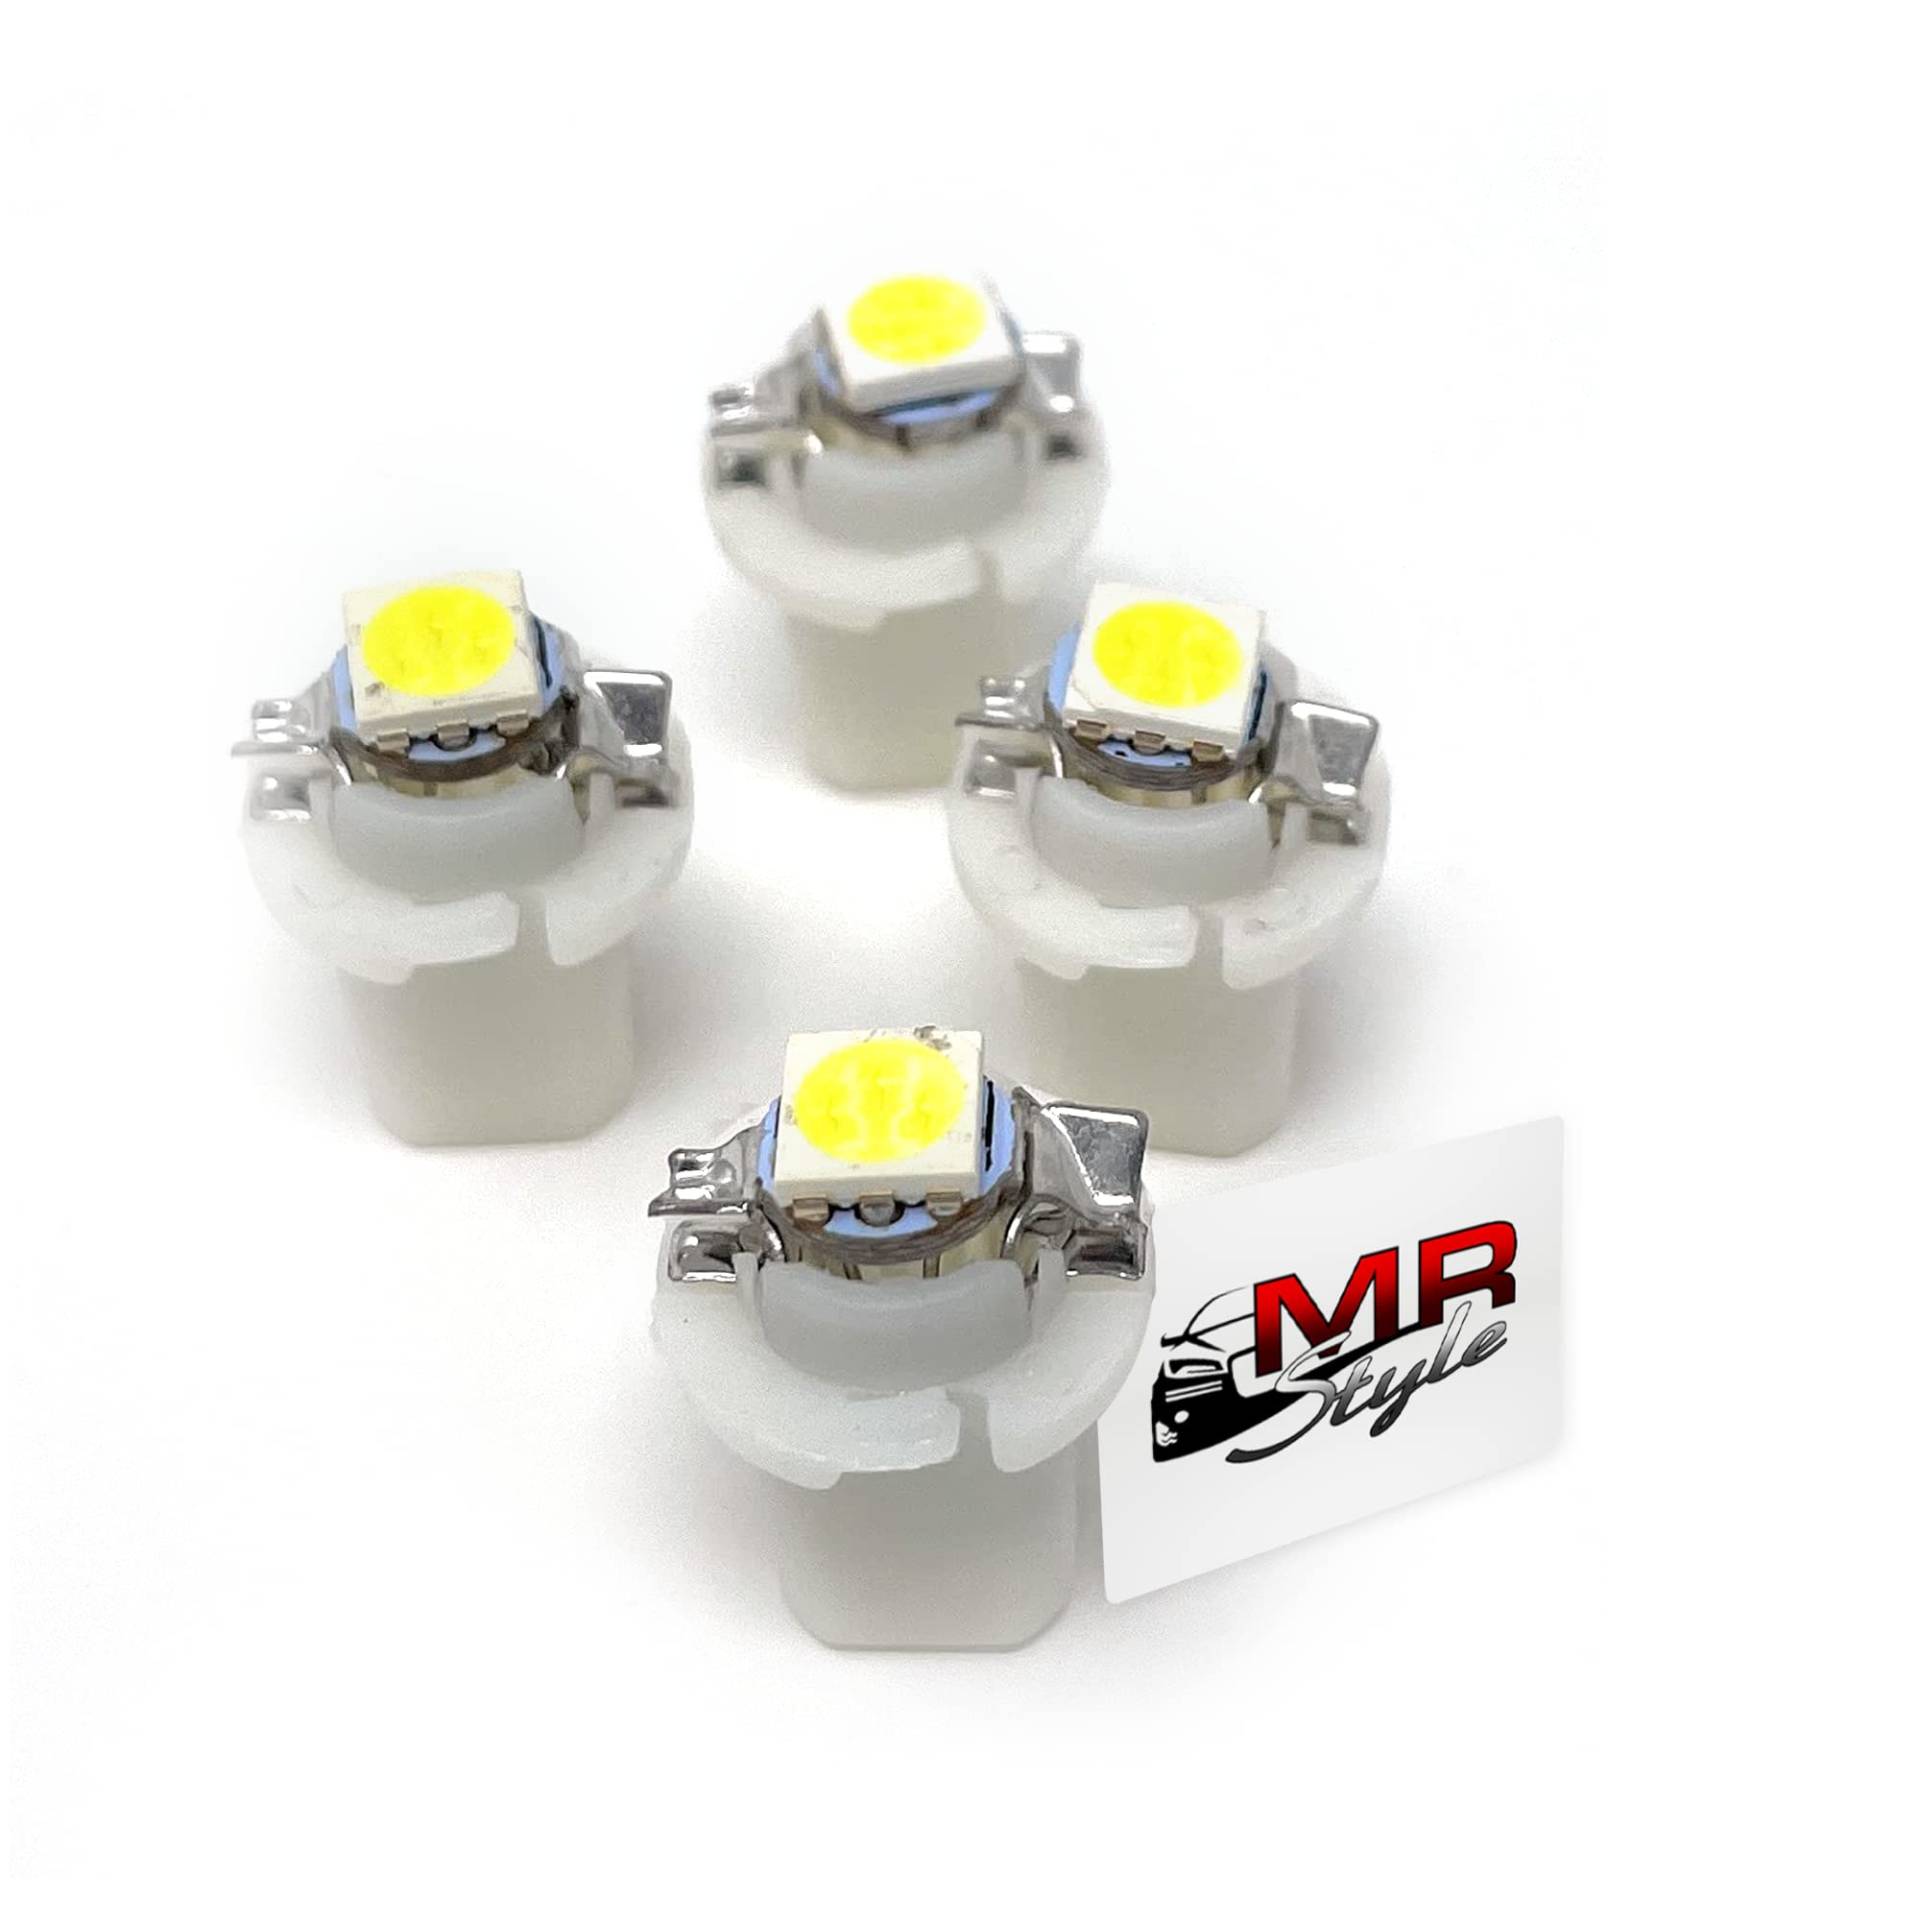 MR-Style Set Aufkleber und 4x high Power LED Tachobeleuchtung (weiß) kompatibel mit Opel Calibra + Vectra A, Instrumentenbeleuchtung Umbauset von MR-Style